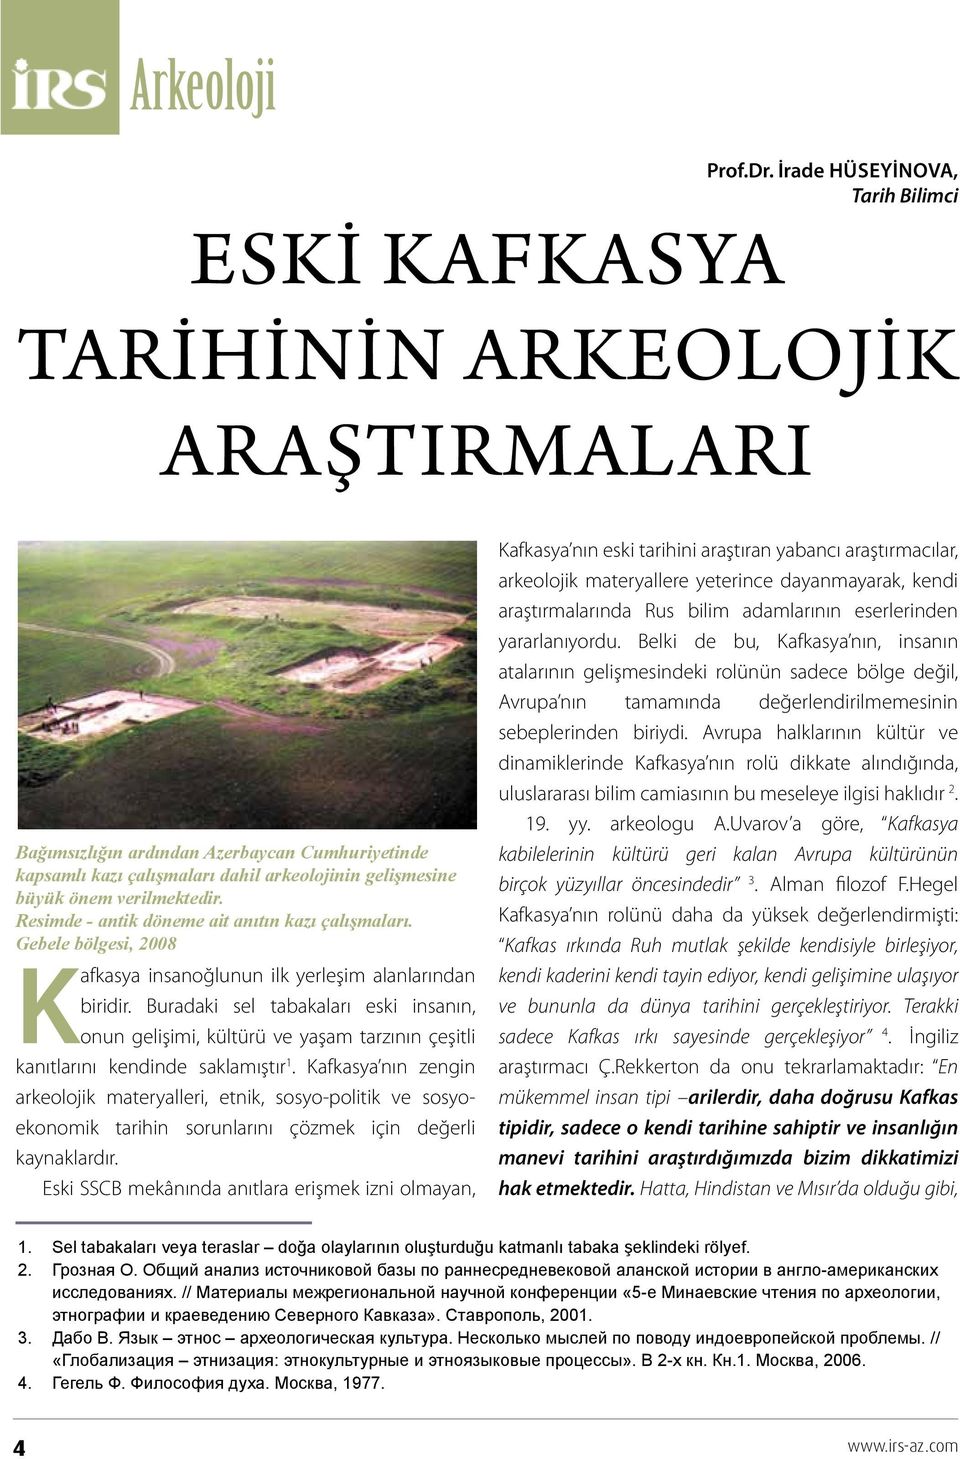 Resimde - antik döneme ait anıtın kazı çalışmaları. Gebele bölgesi, 2008 Kafkasya insanoğlunun ilk yerleşim alanlarından biridir.